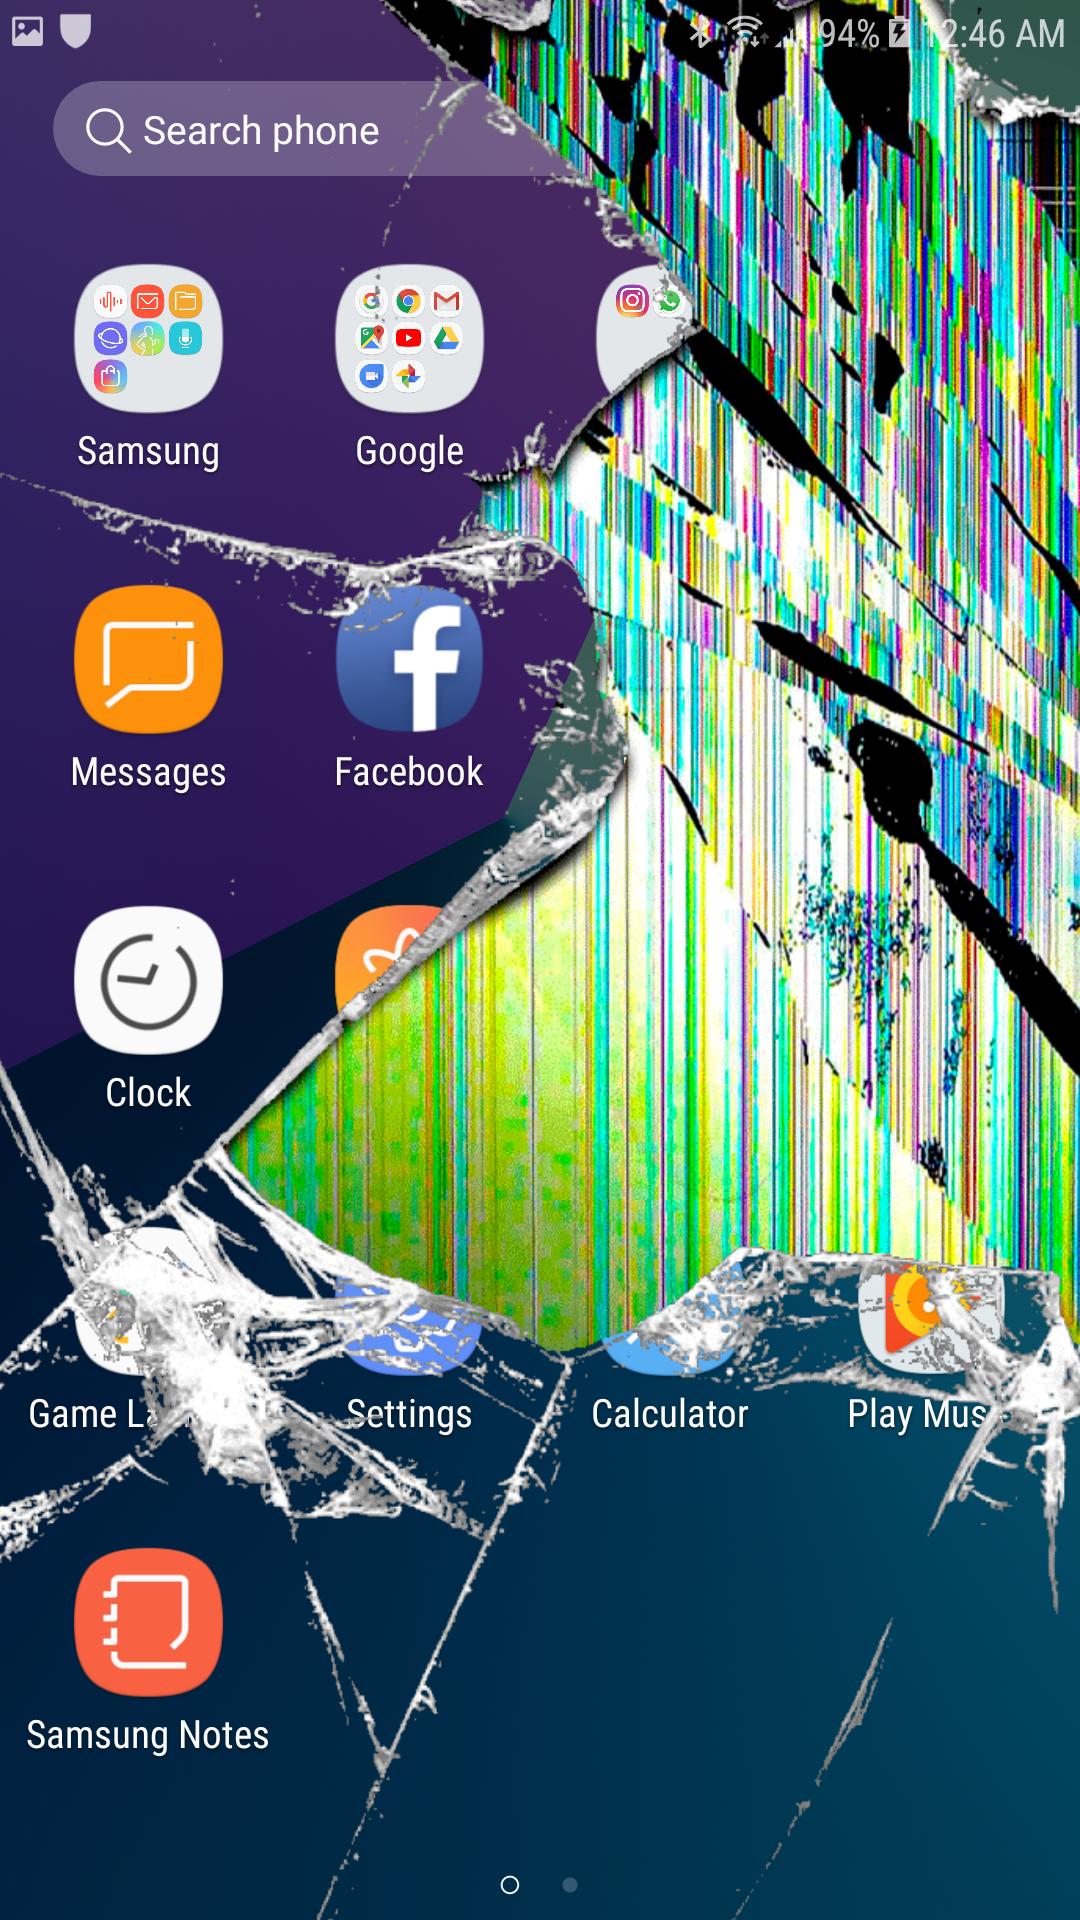 Tải hình nền kính vỡ cho iPhone | Broken screen wallpaper, Phone screen  wallpaper, Broken screen